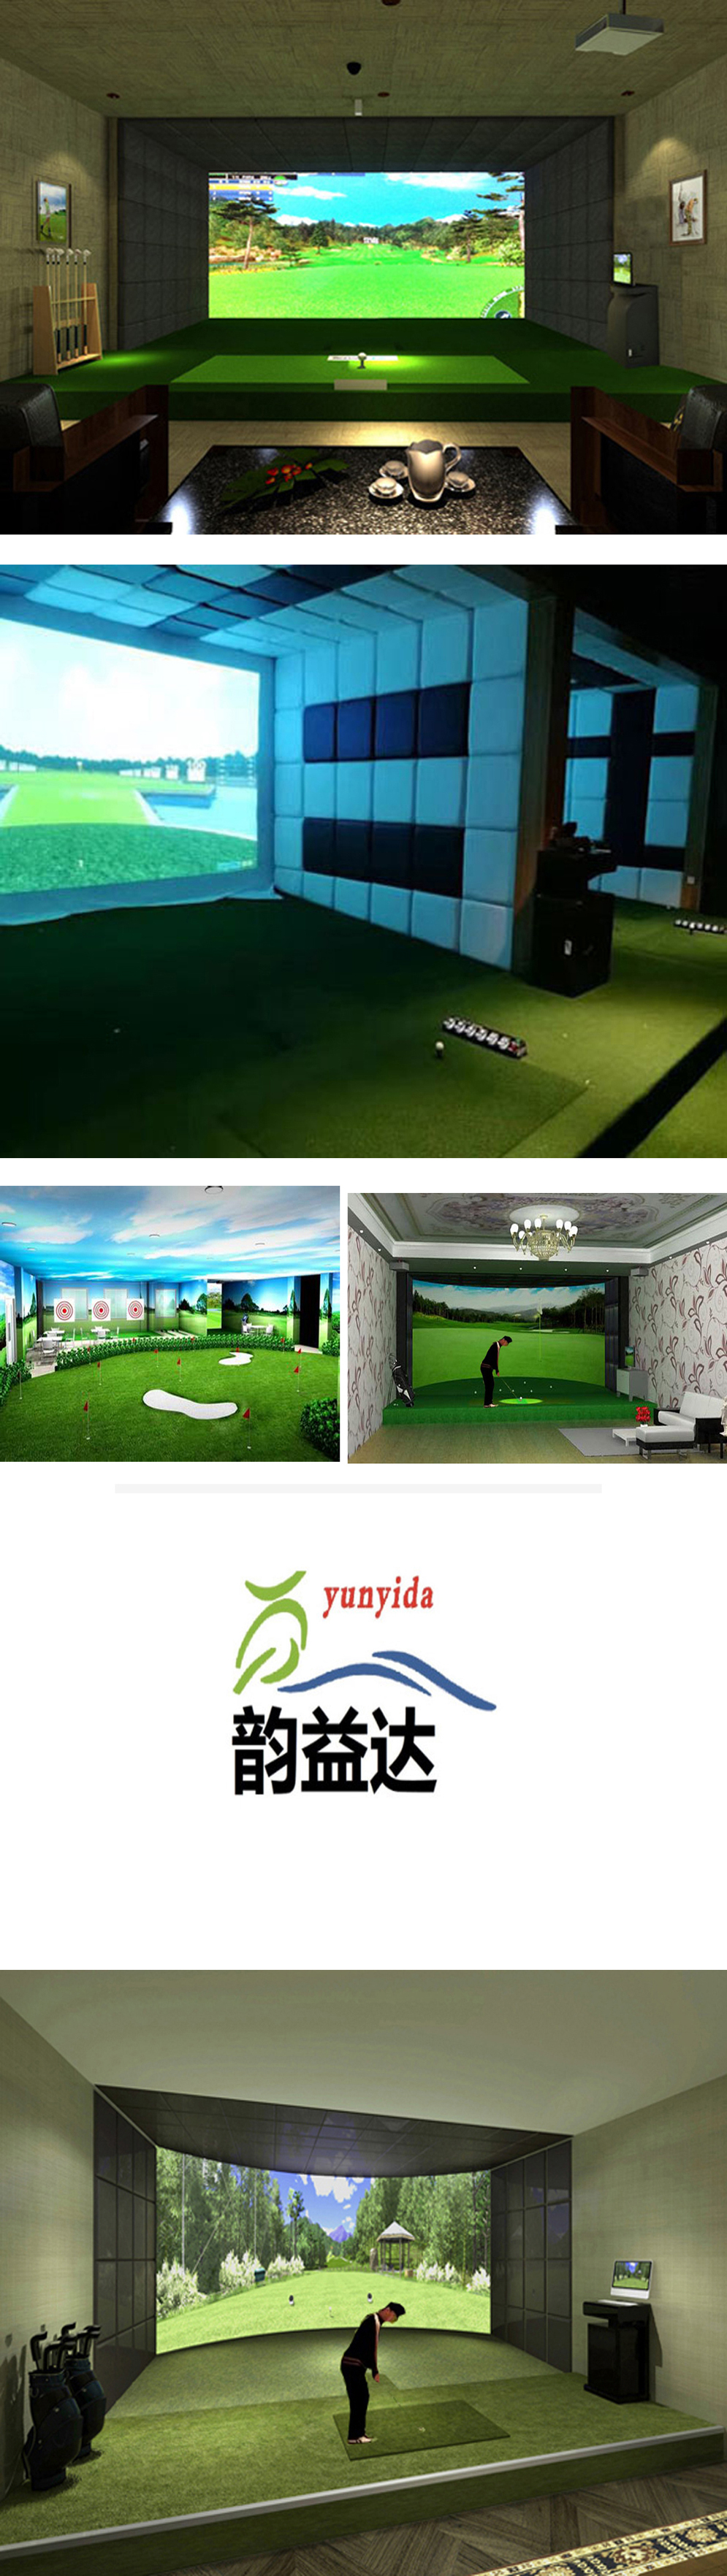 室内高尔夫模拟器案例 二.jpg